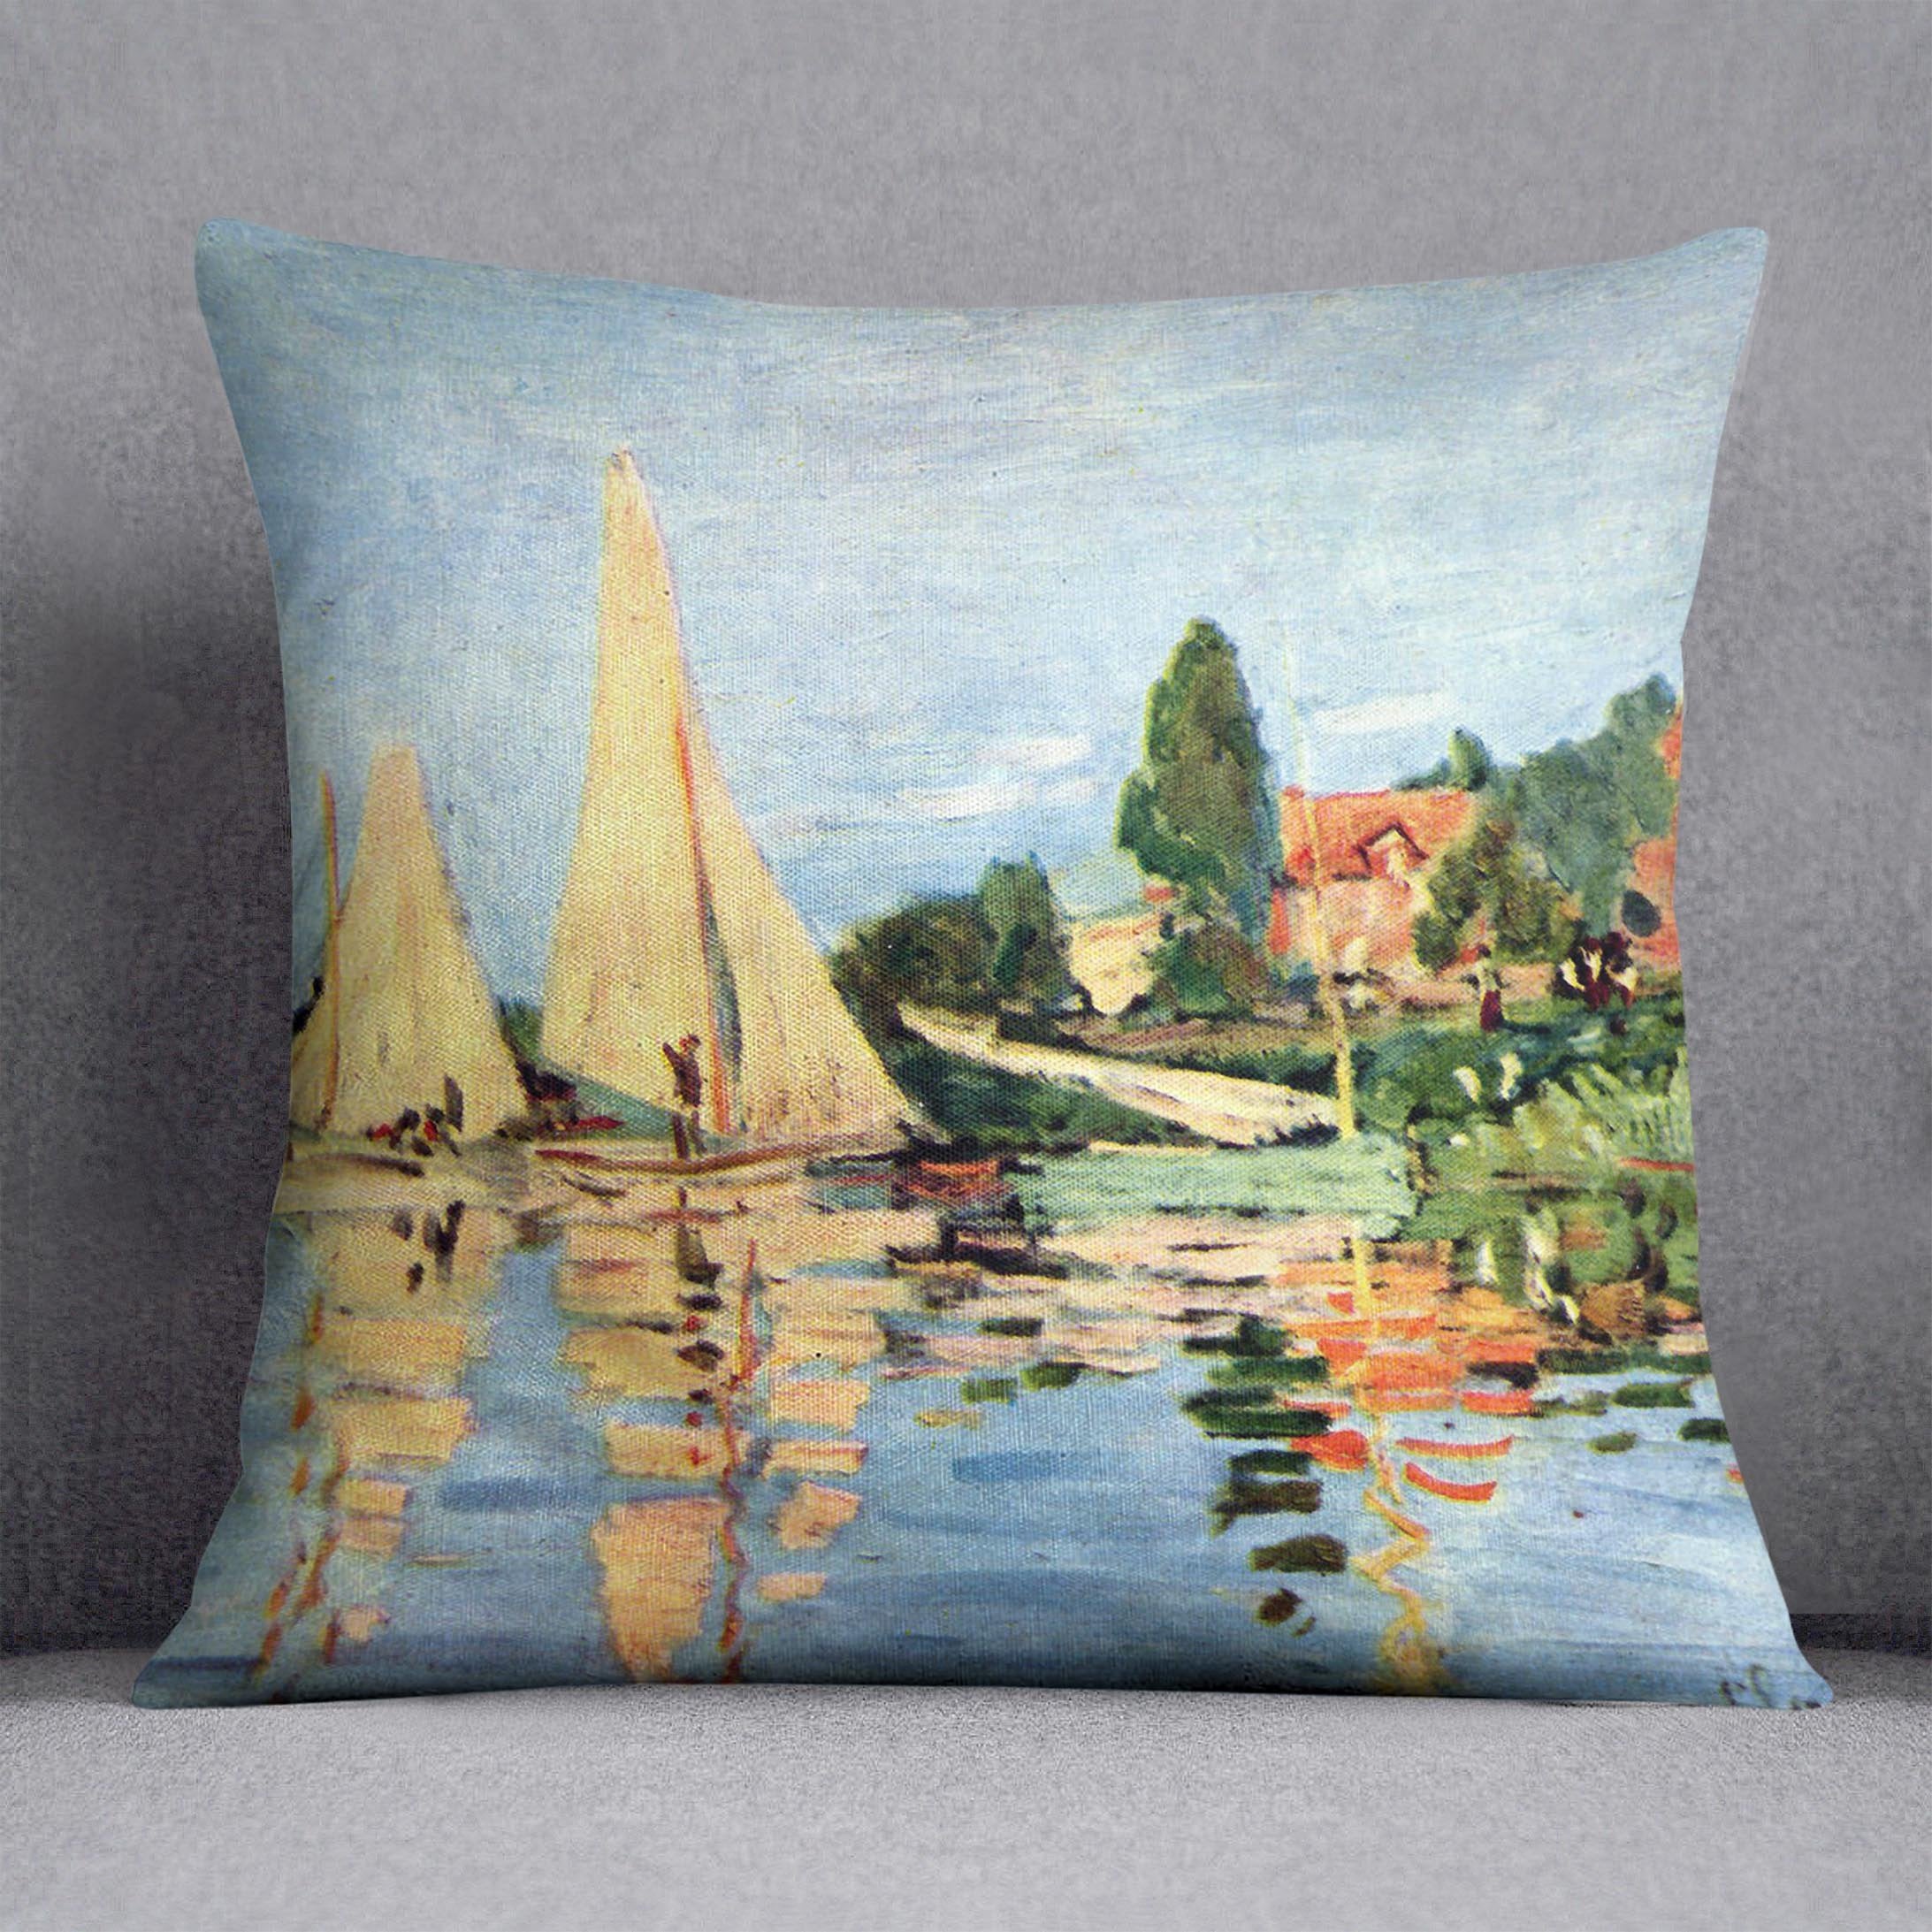 Regatta at Argenteuil by Monet Throw Pillow